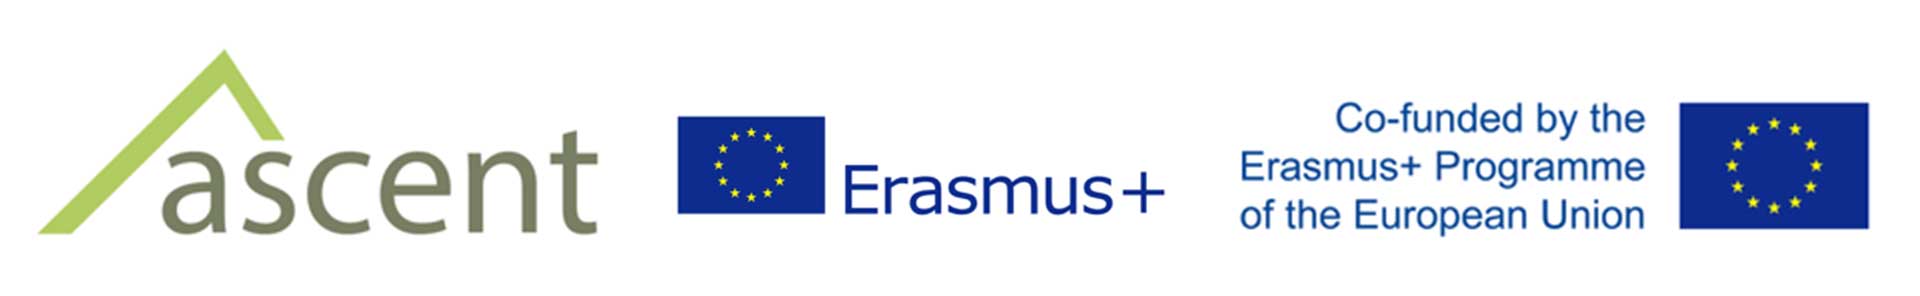 ASCENT, Erasmus+